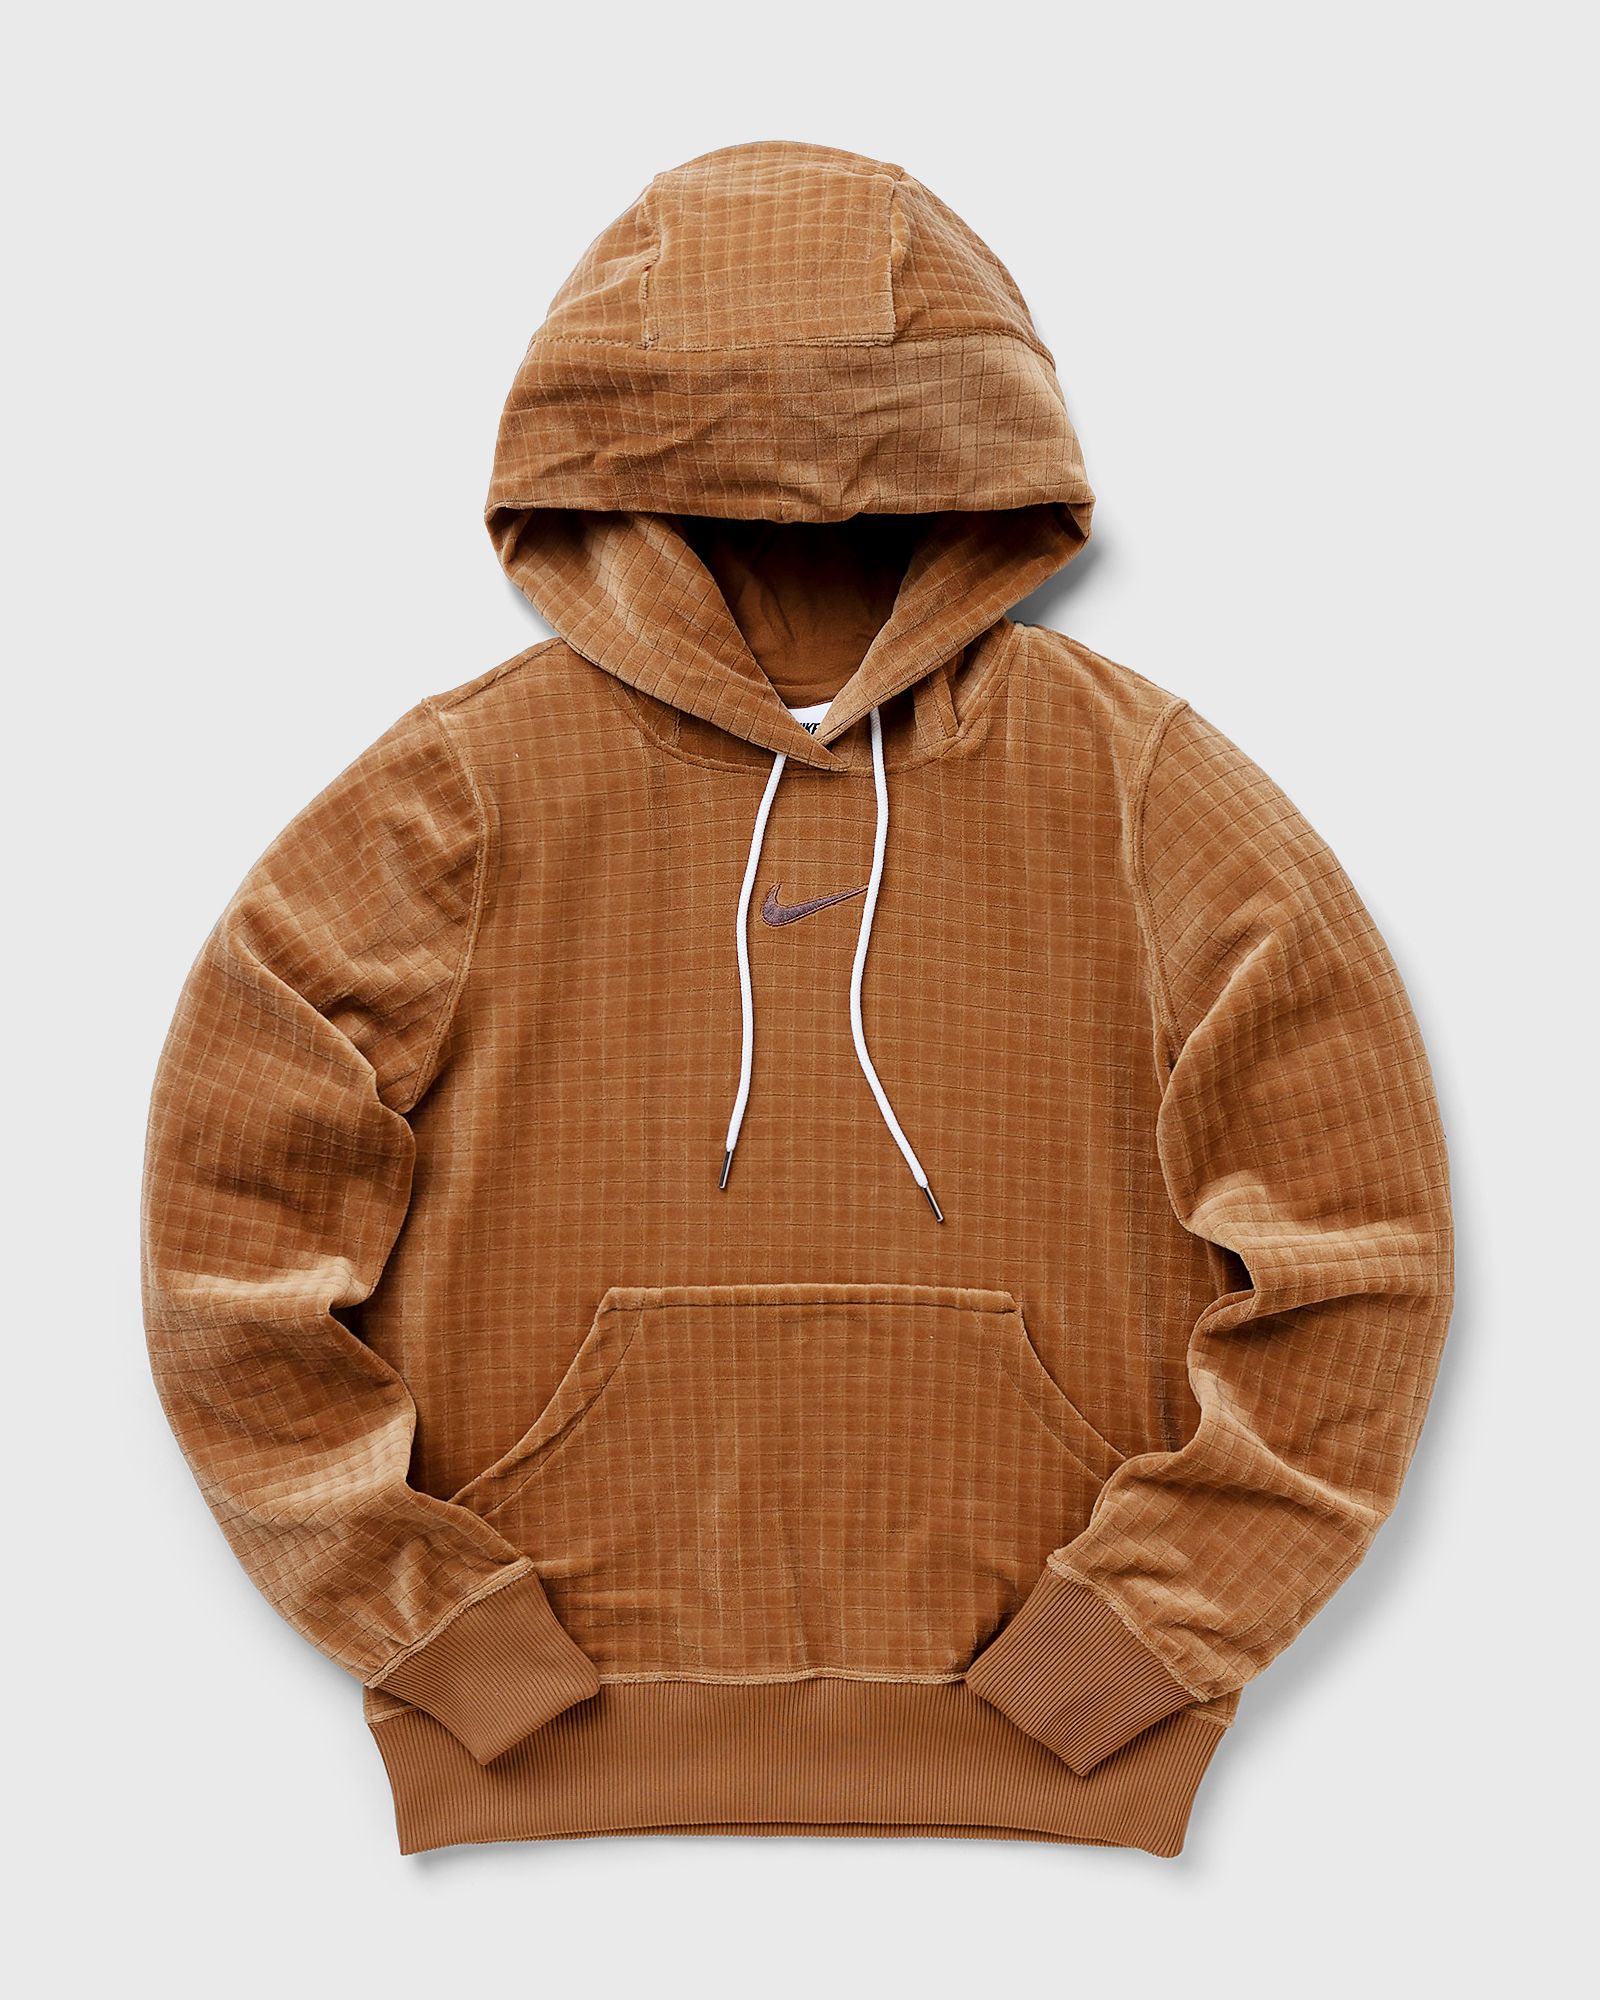 Nike - wmns velour hoodie women hoodies brown in größe:m